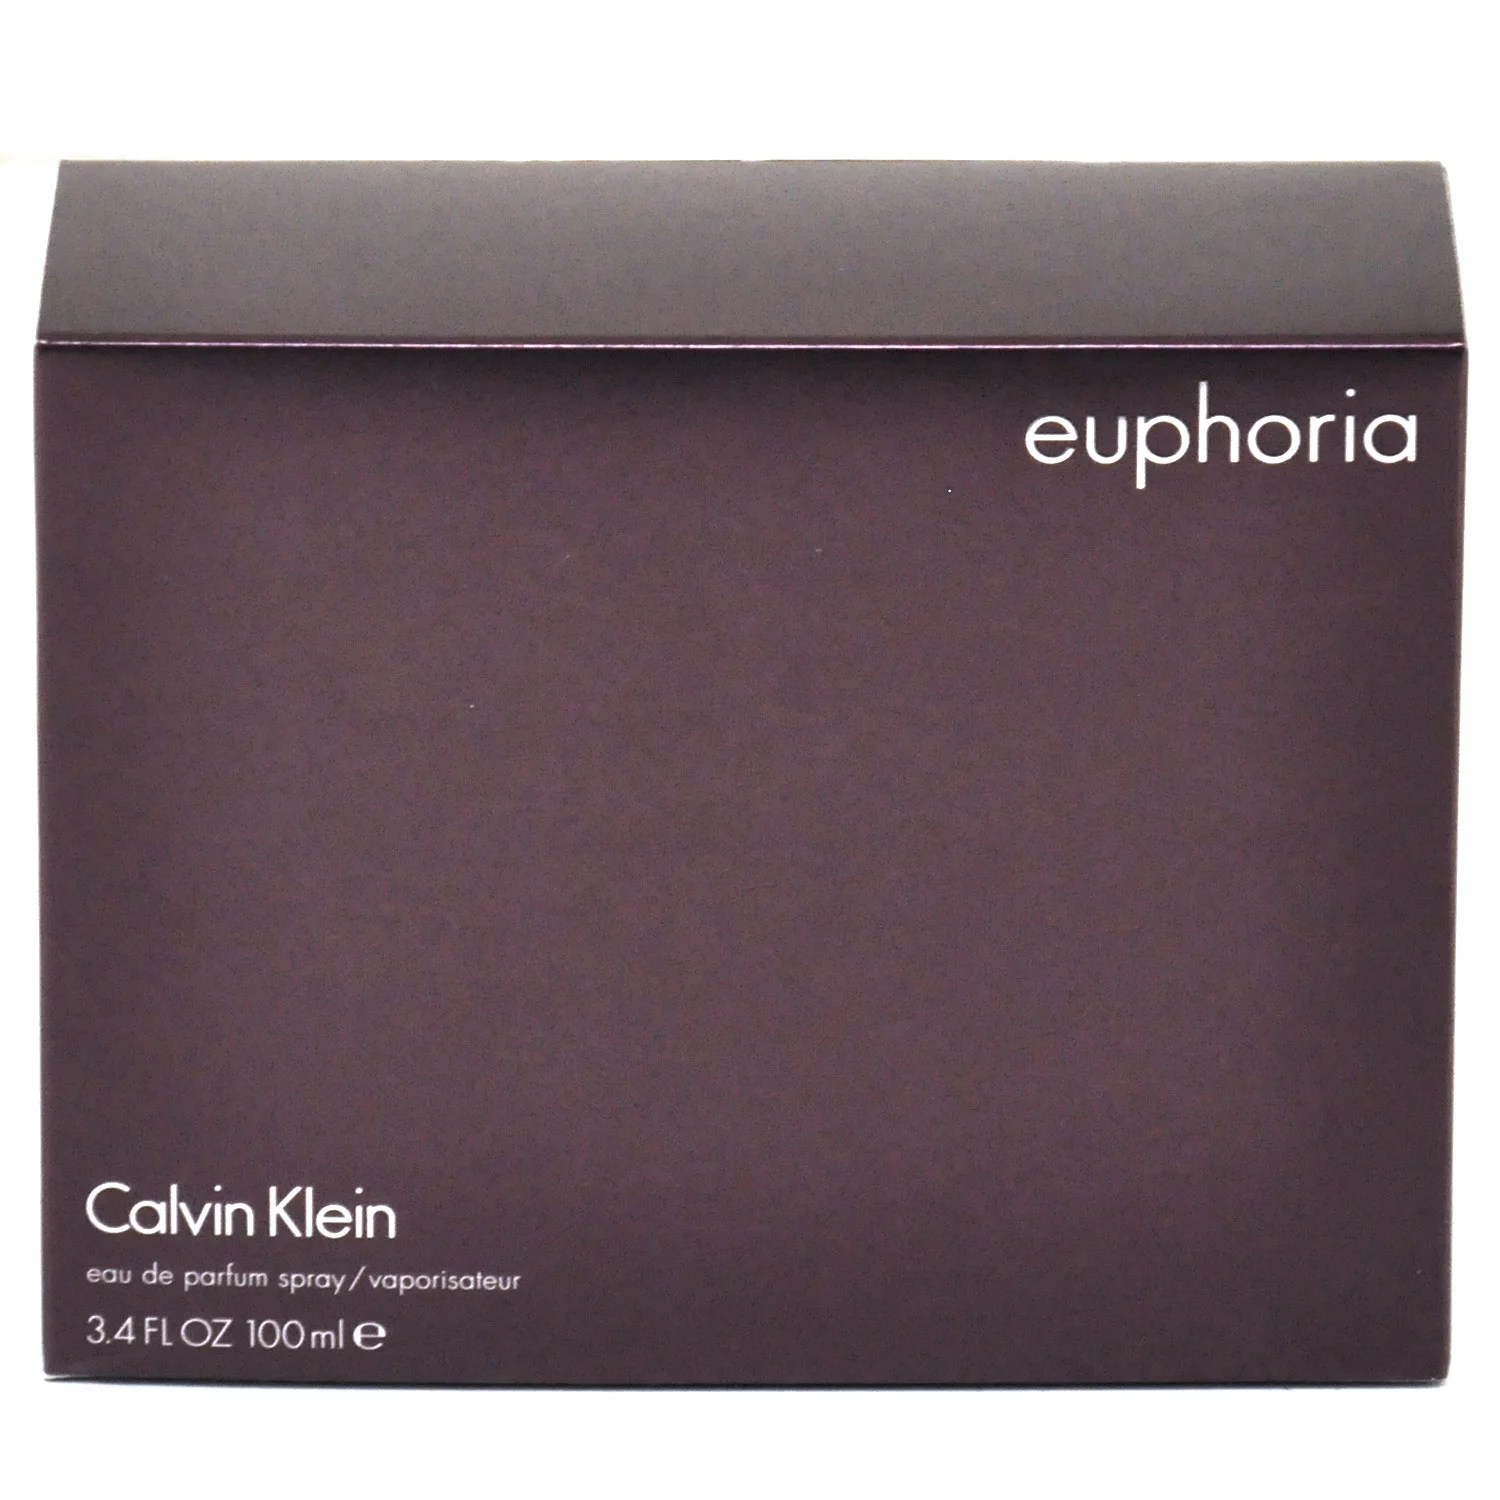 Euphoria by Calvin Klein – 3.4 oz Eau de Parfum